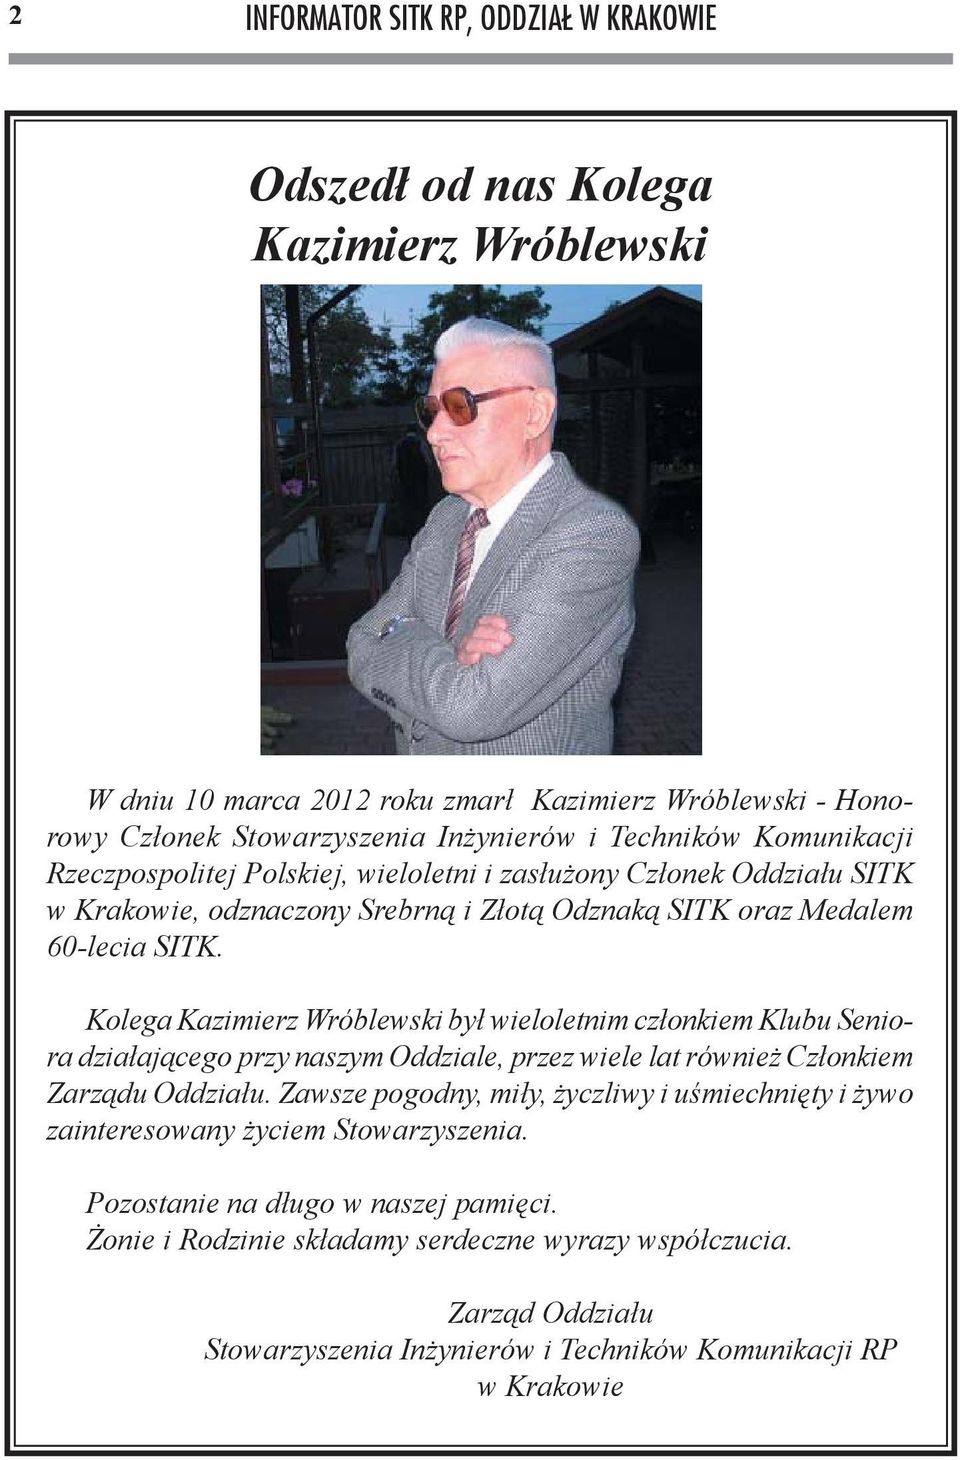 Kolega Kazimierz Wróblewski był wieloletnim członkiem Klubu Seniora działającego przy naszym Oddziale, przez wiele lat również Członkiem Zarządu Oddziału.